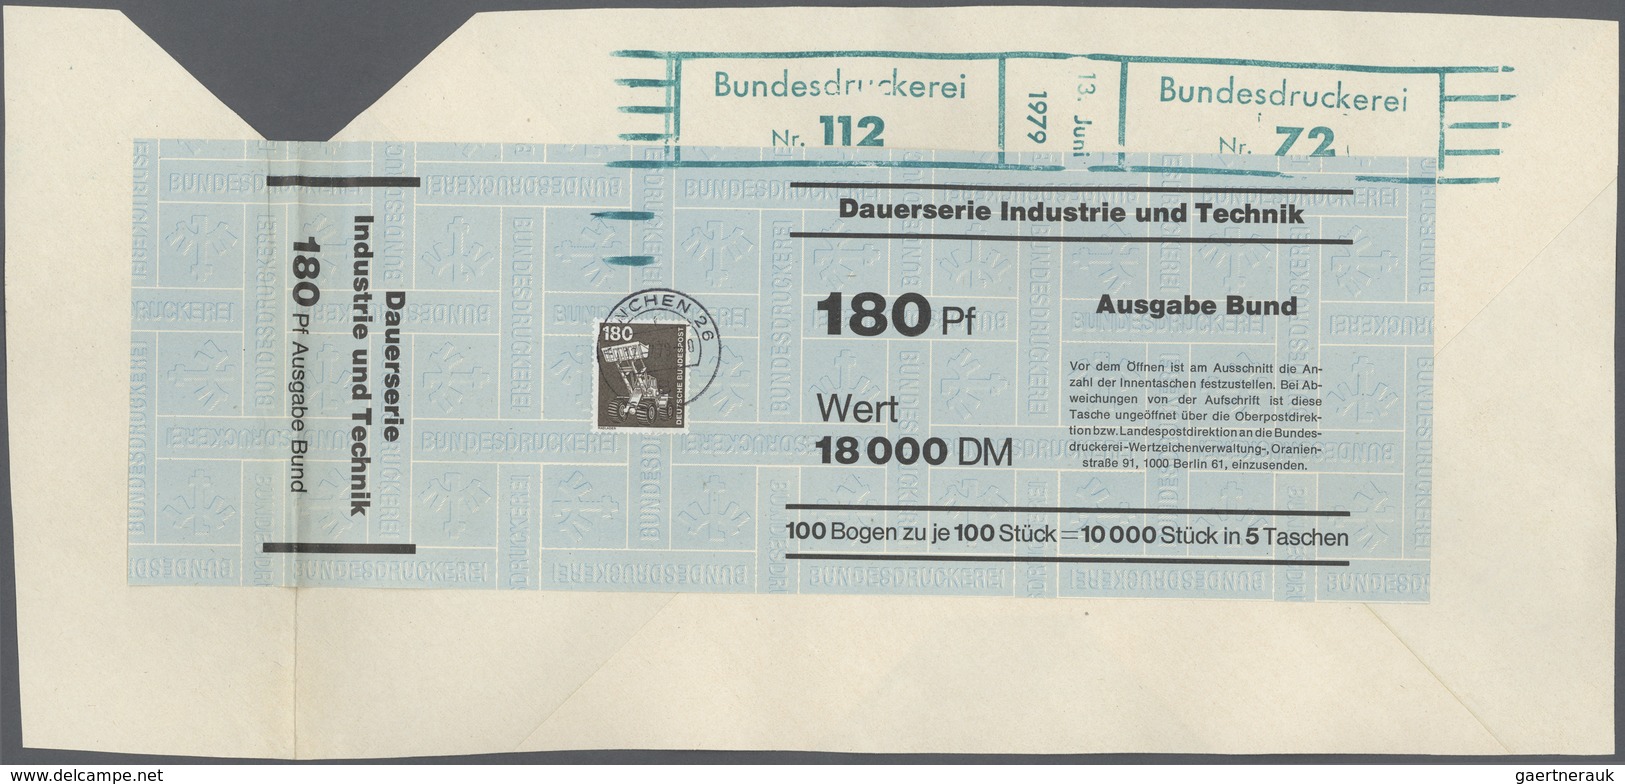 Bundesrepublik Deutschland: 1975/78, Industrie & Technik 5 - 500 Pfg., kompletter Satz mit Ergänzung